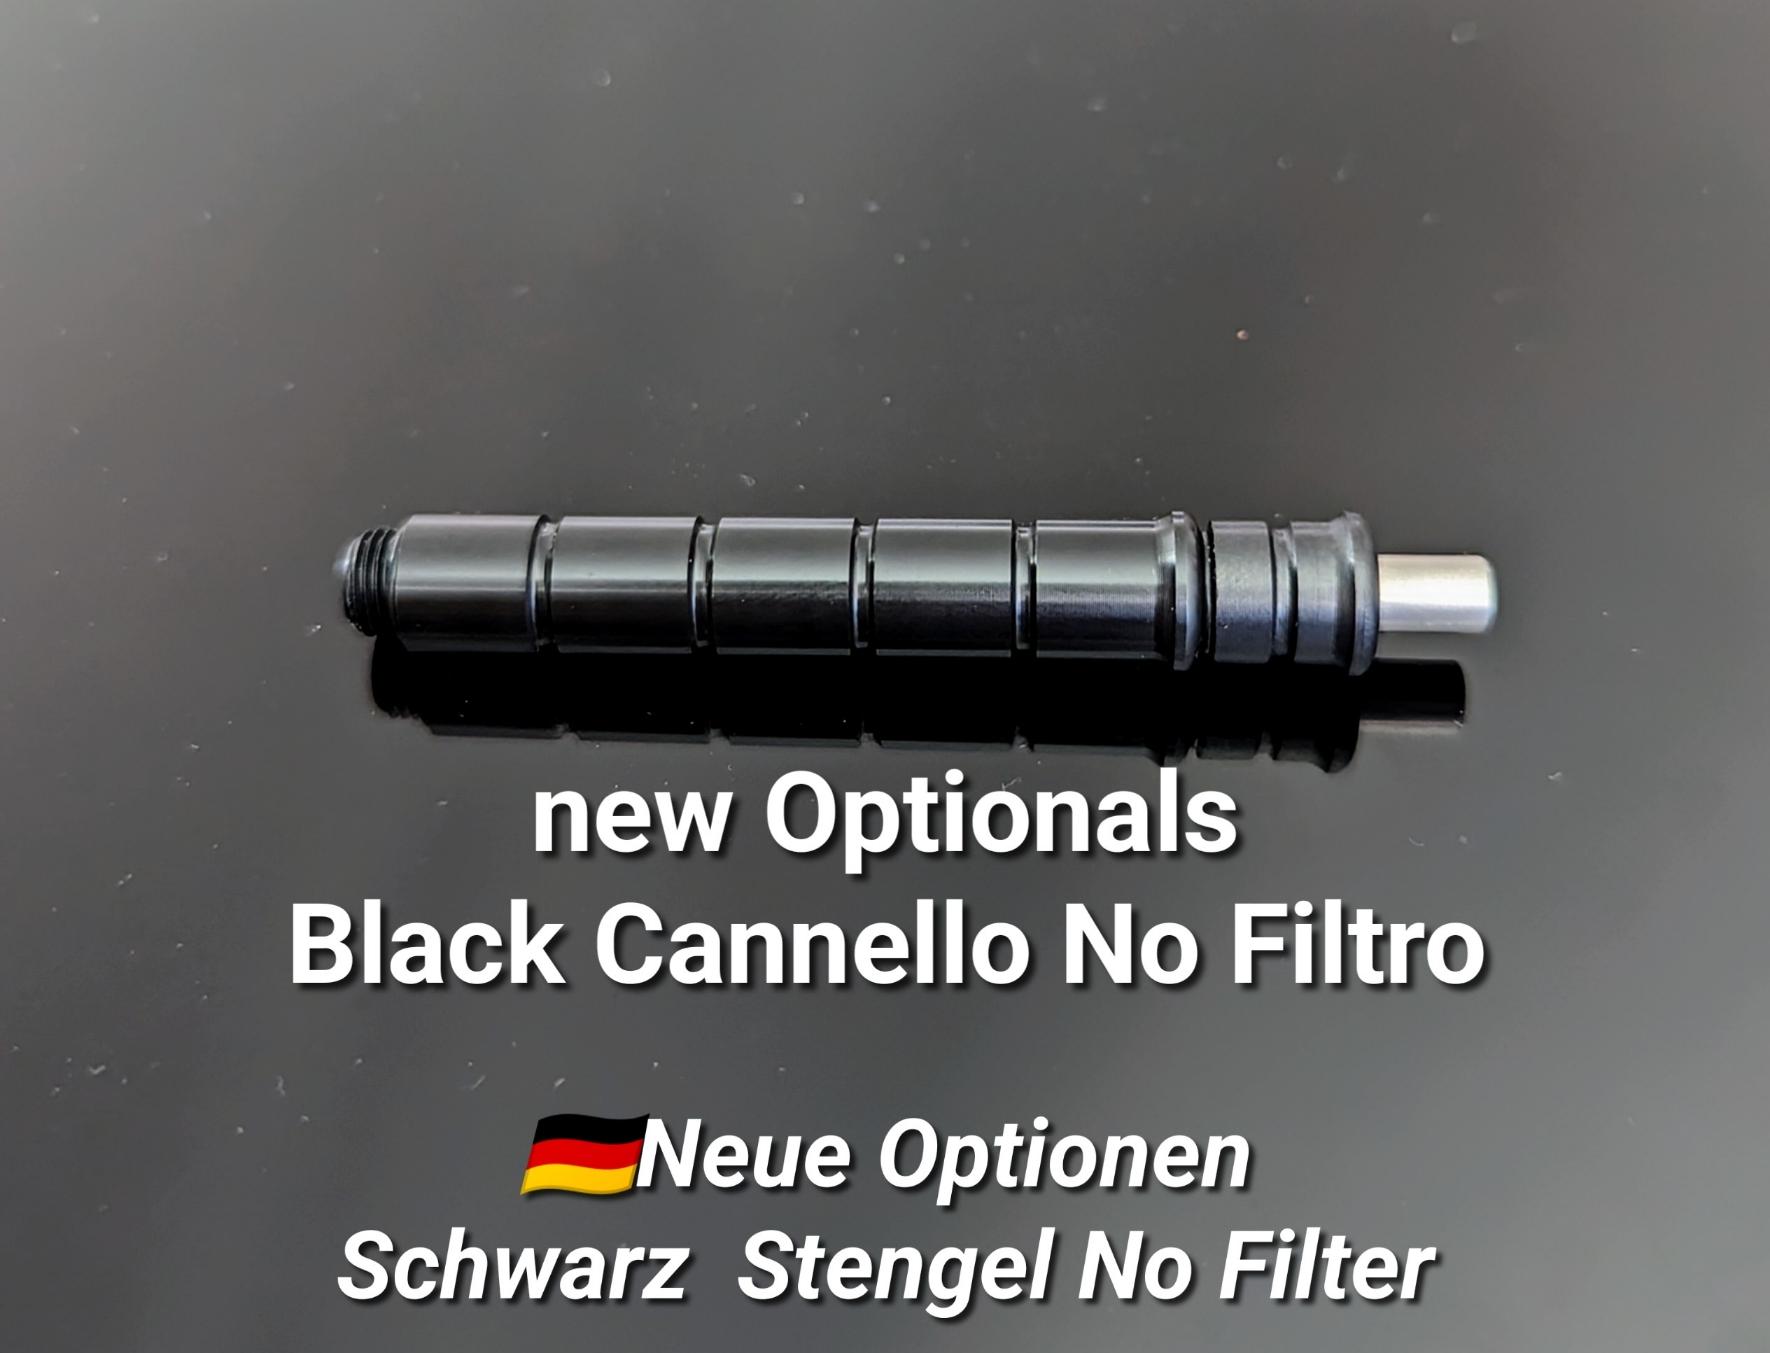 Nuovo Optional Black Cannello No Filtro